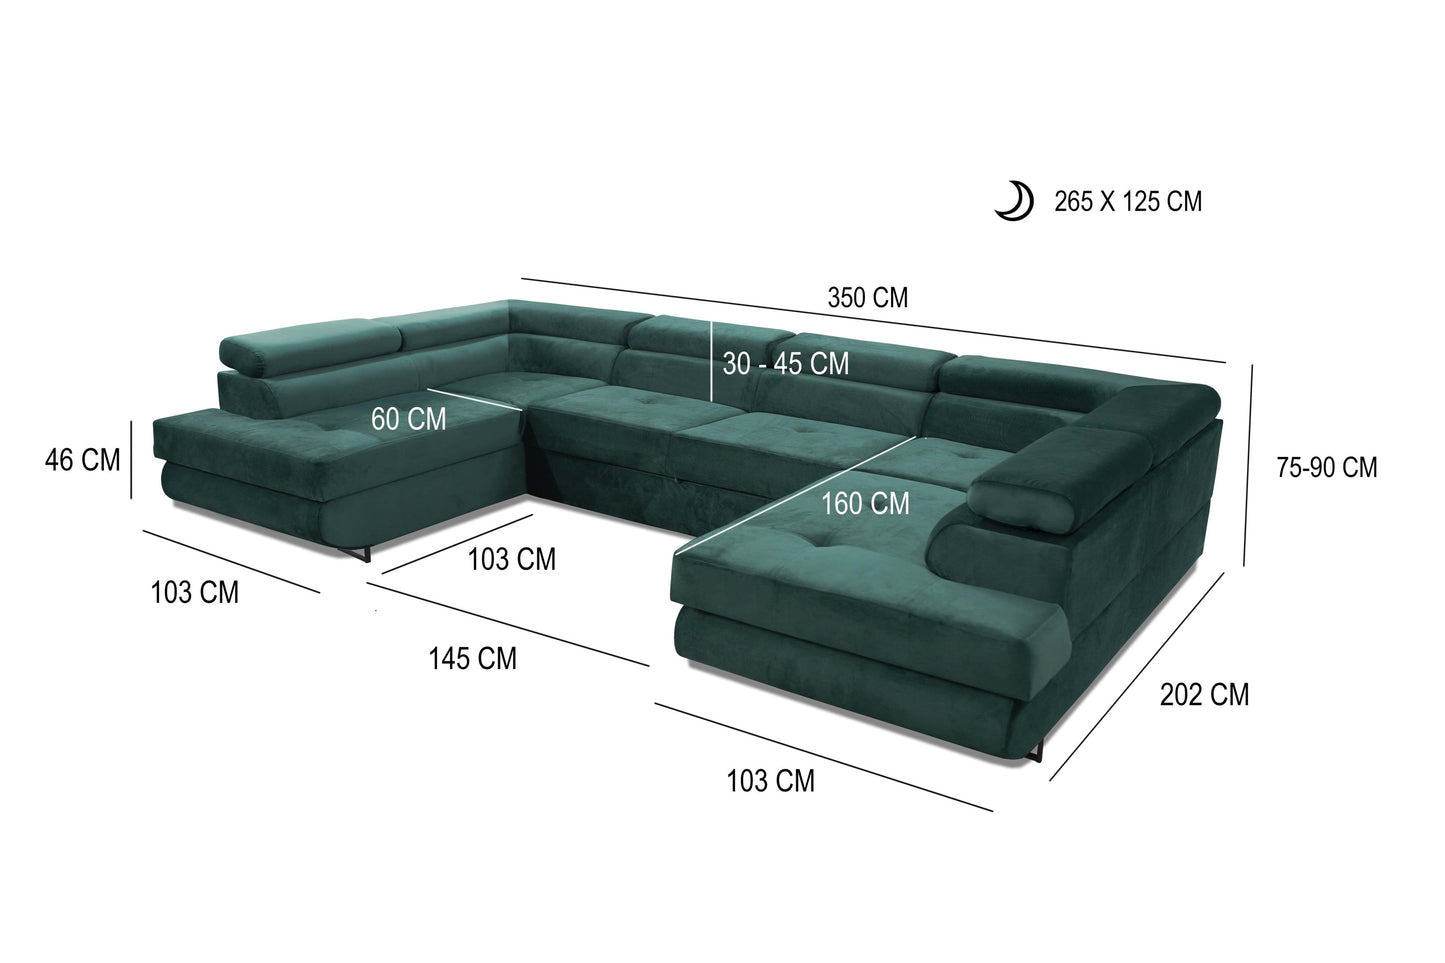 Wymiary narożnika do salonu 3,5 m WEST 2 pojemniki funkcja spania to idealny mebel do dużych, przestrzennych pomieszczeń. Jest on niezwykle funkcjonalny i stabilny zarazem.